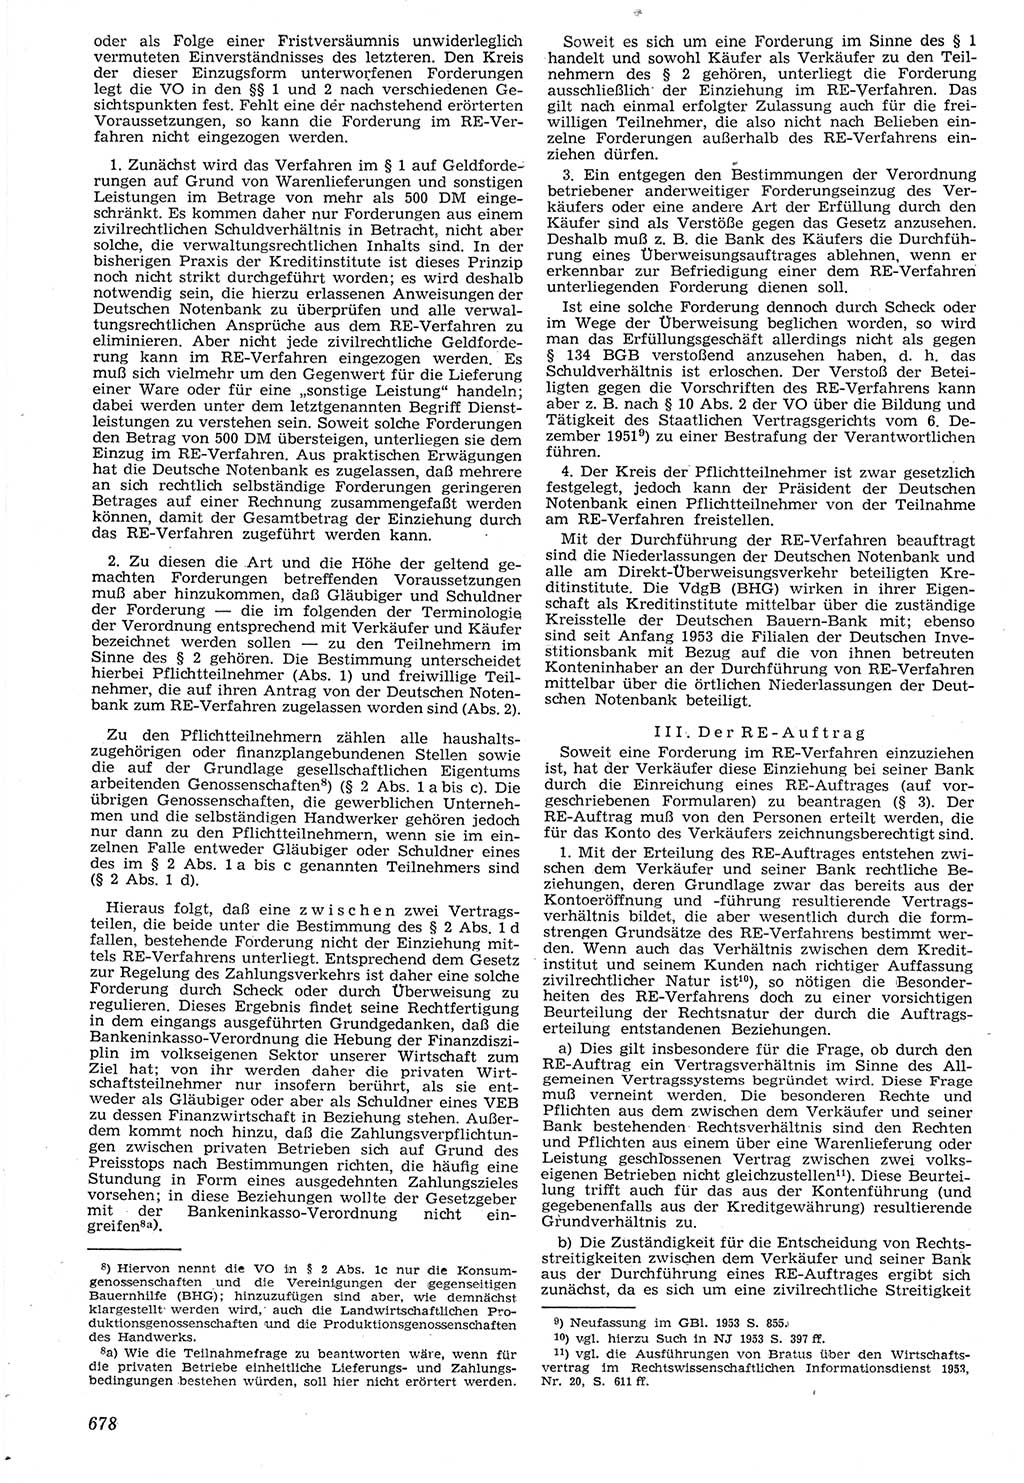 Neue Justiz (NJ), Zeitschrift für Recht und Rechtswissenschaft [Deutsche Demokratische Republik (DDR)], 7. Jahrgang 1953, Seite 678 (NJ DDR 1953, S. 678)